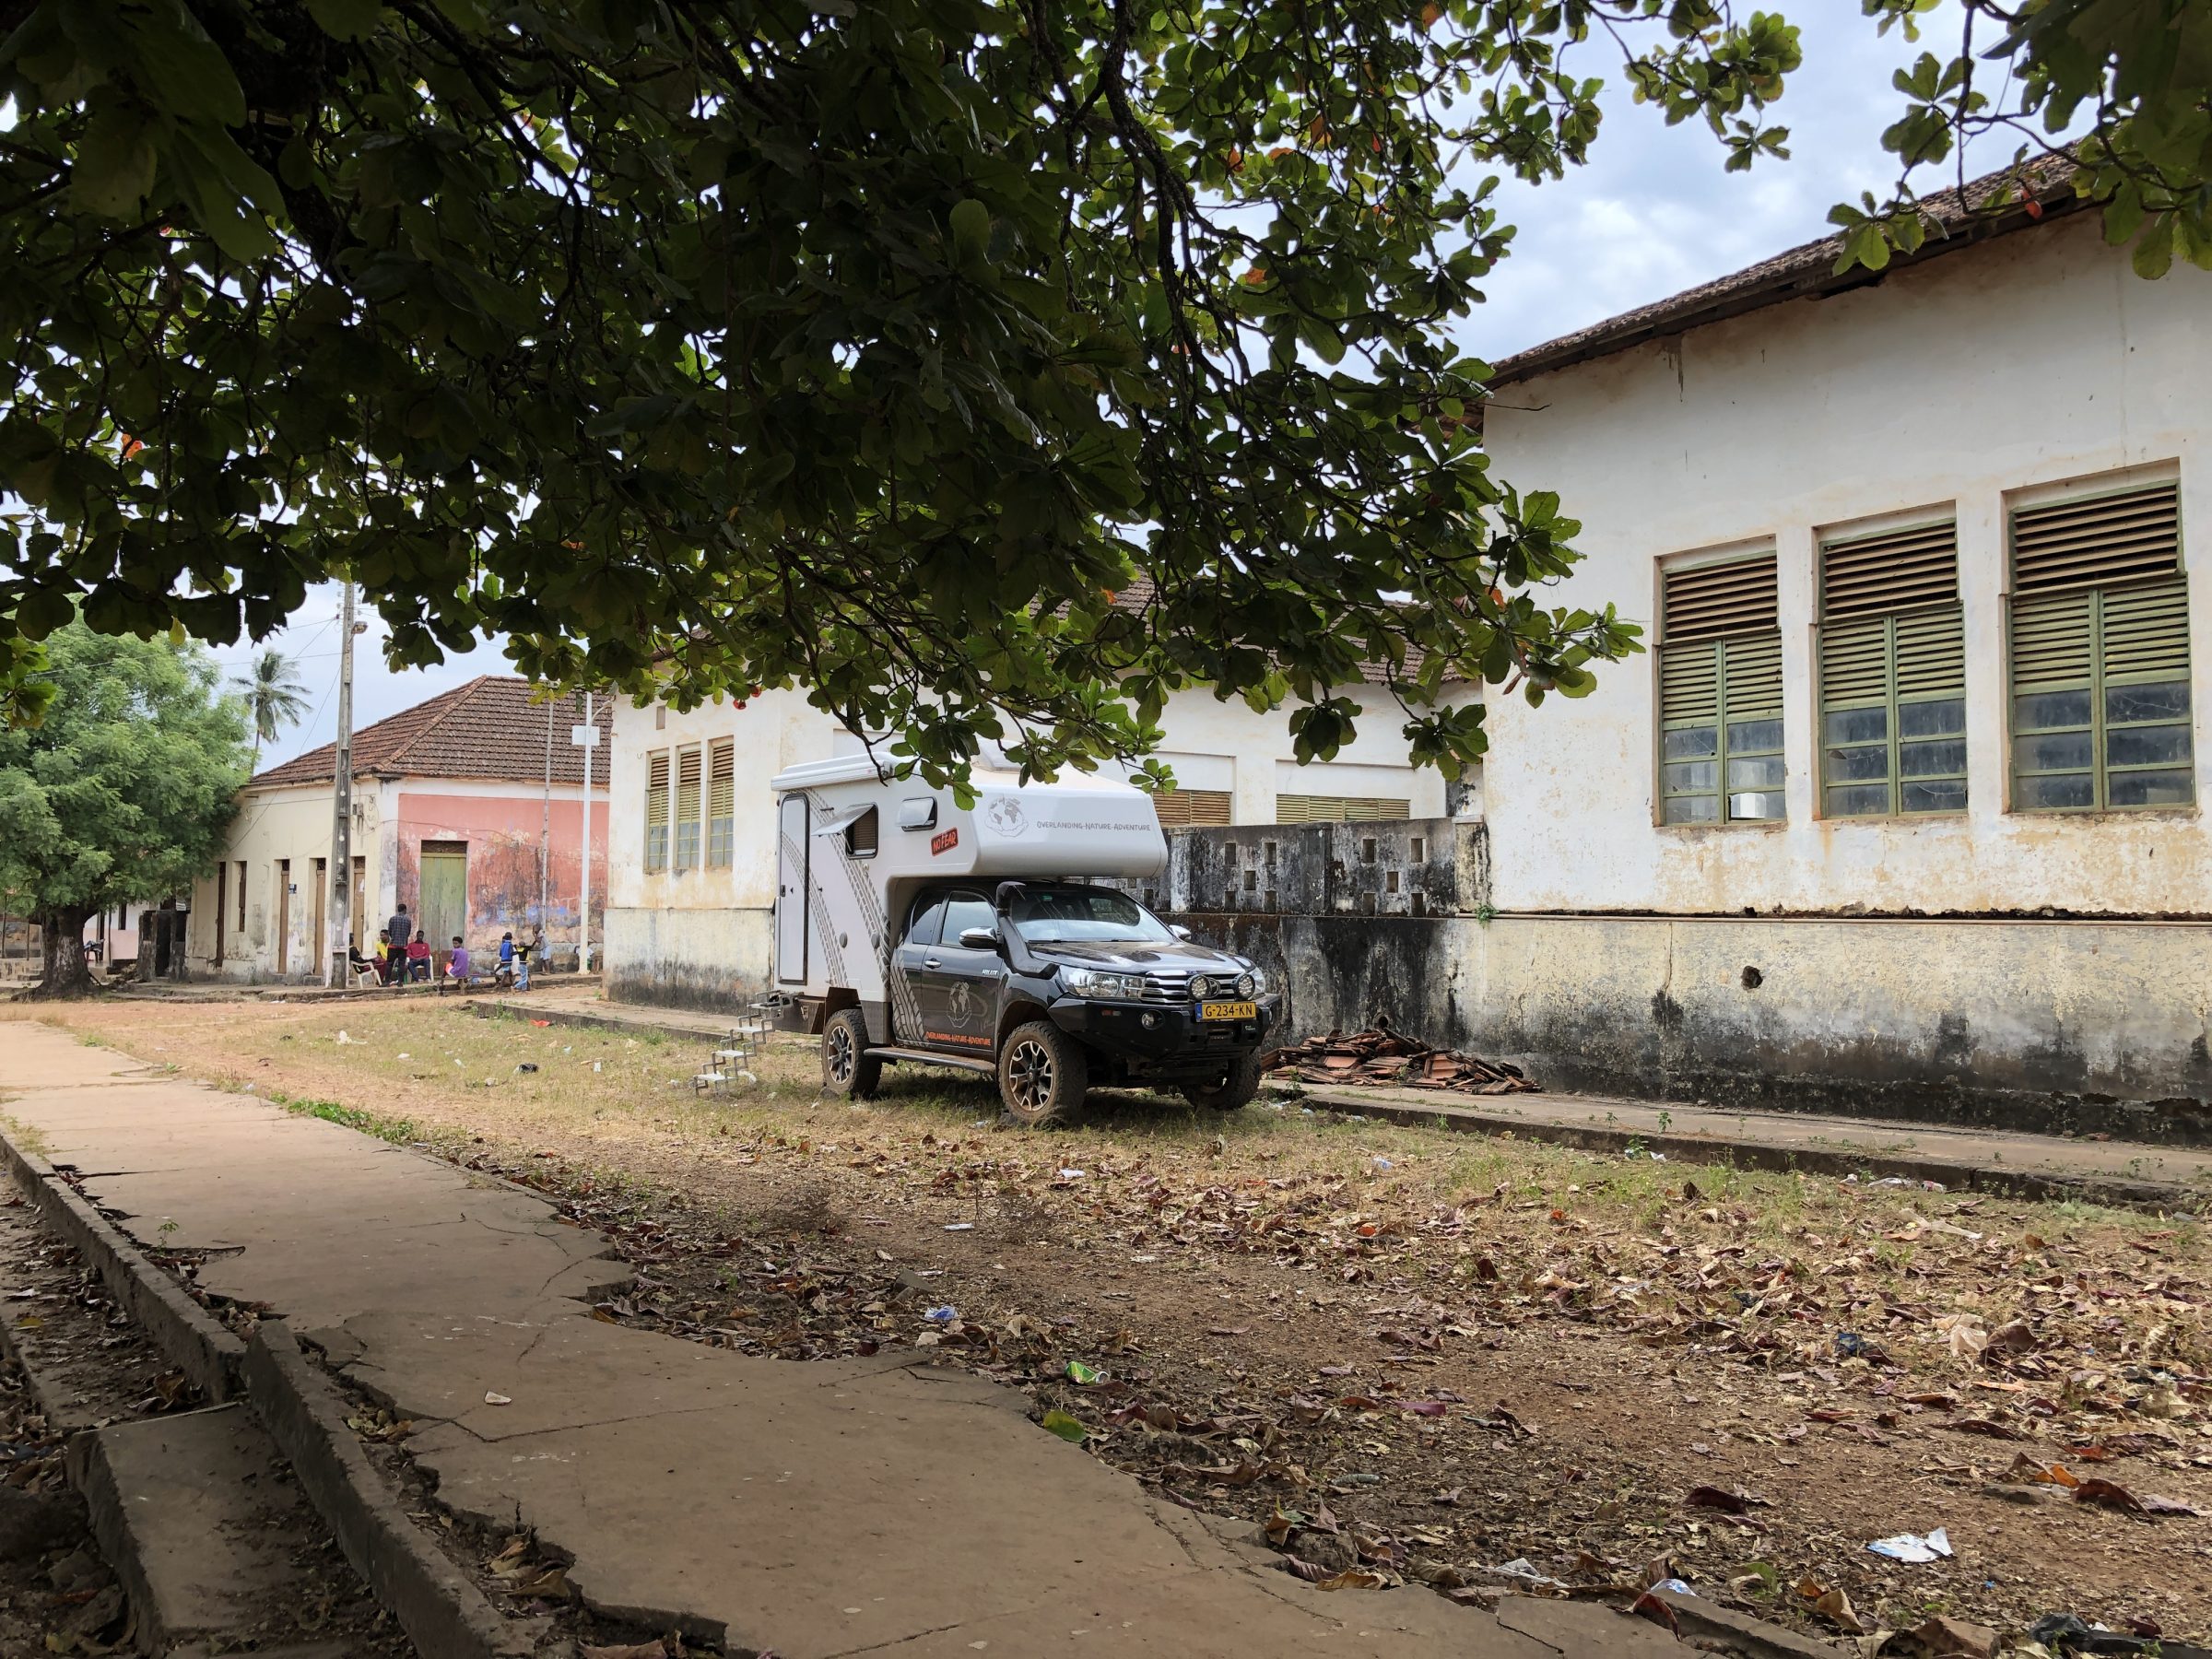 Midden in het dorp | Overlanden in Guinea Bissau